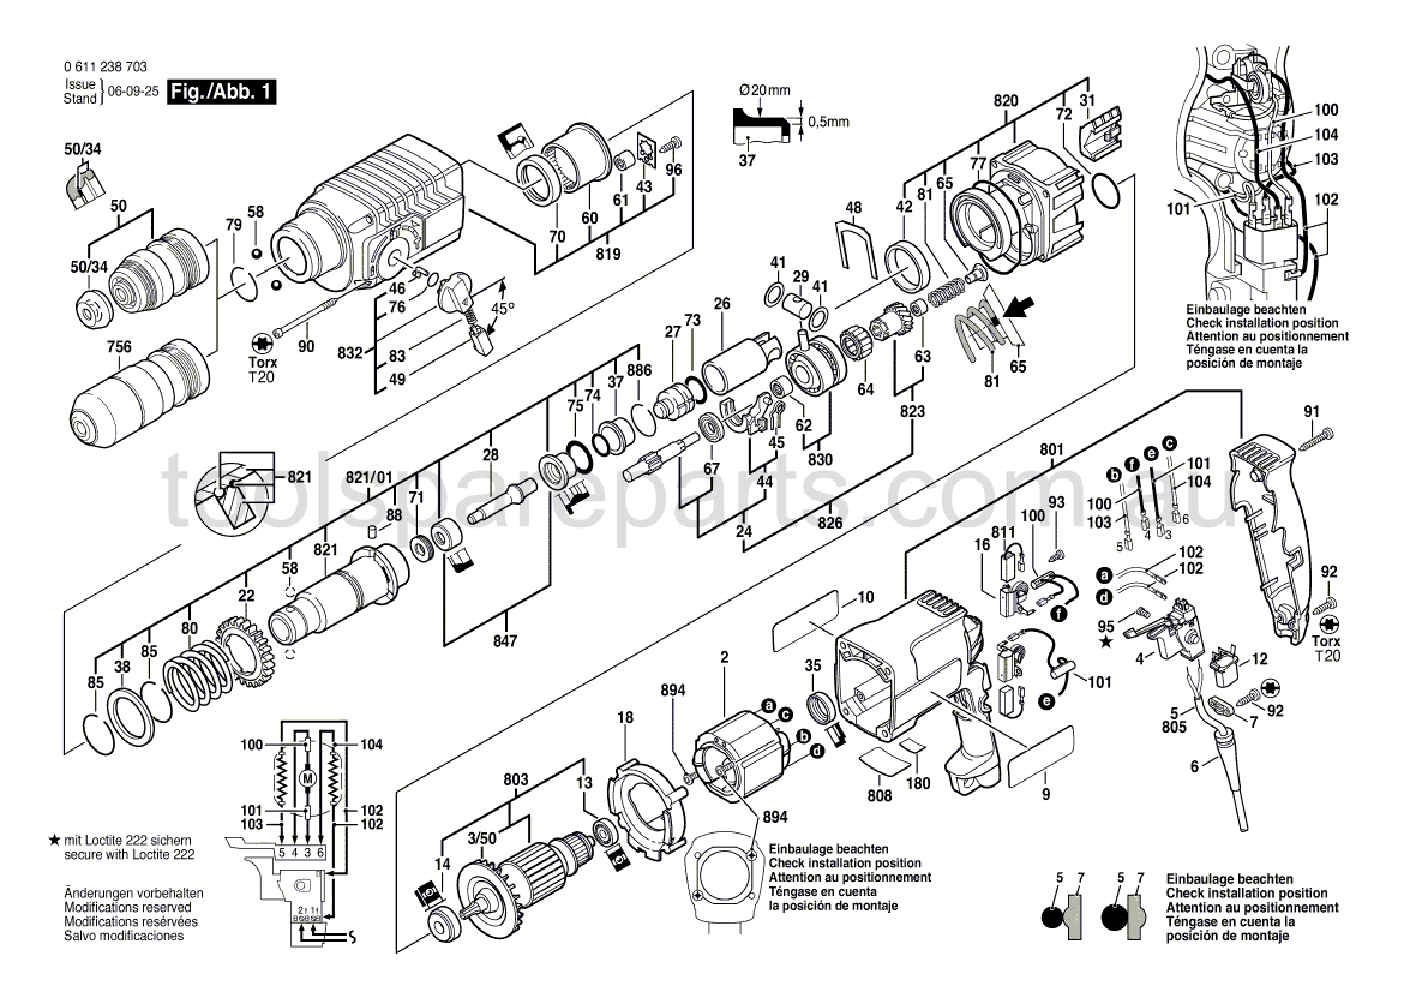 Bosch GBH 2-24 DFR 0611238737  Diagram 1